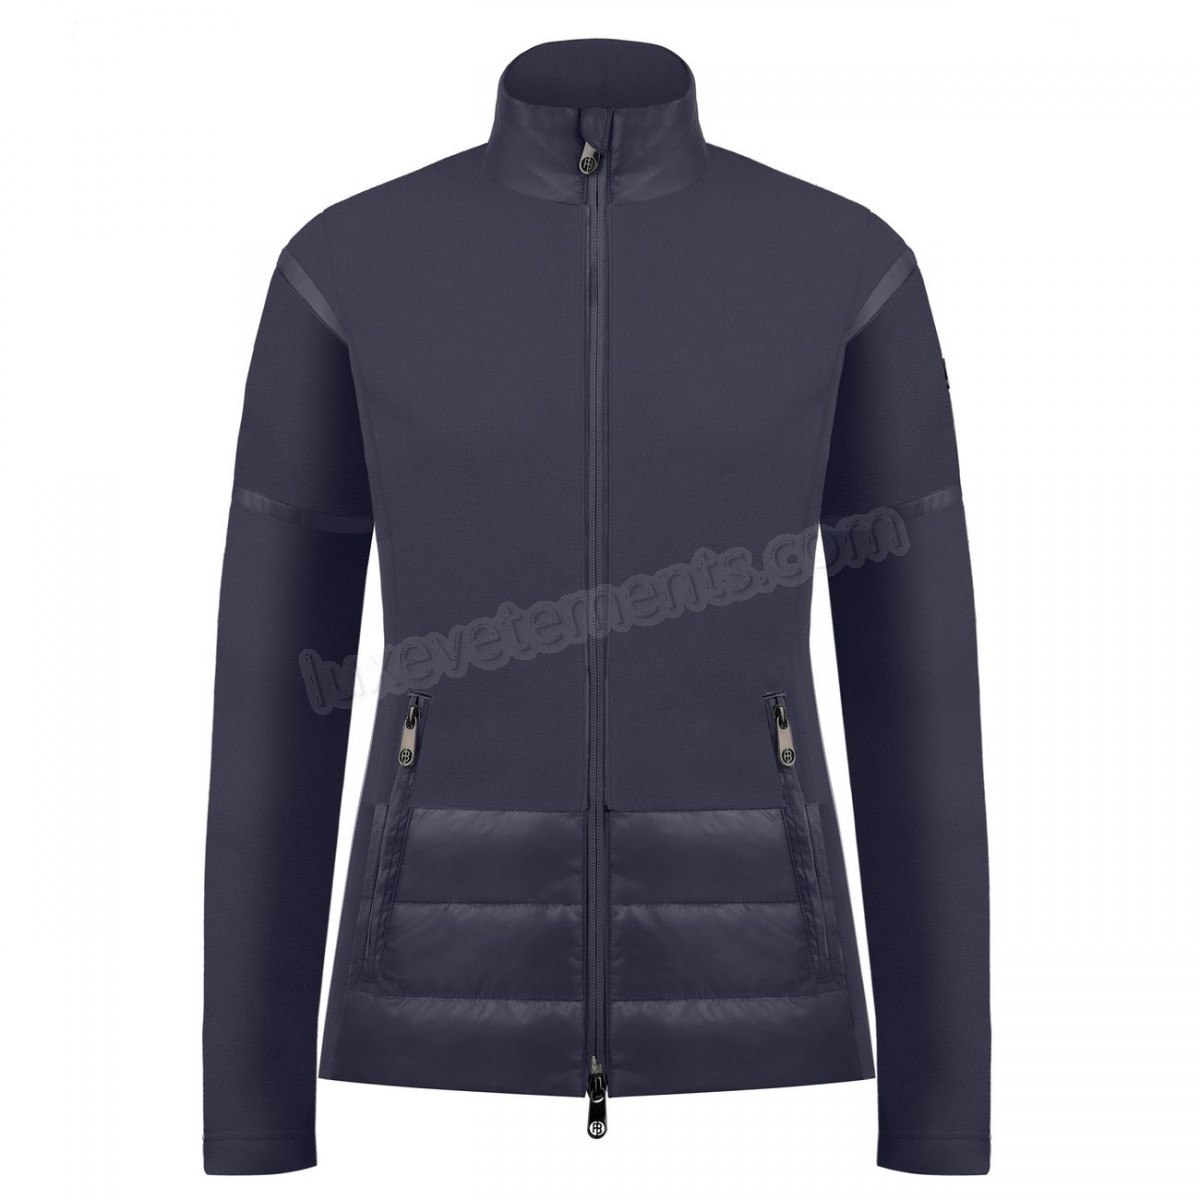 Poivre Blanc-Sports d'hiver femme POIVRE BLANC Veste Polaire Poivre Blanc Hybrid Fleece Jacket 1601 Gothic Blue 4 Femme Vente en ligne - -0